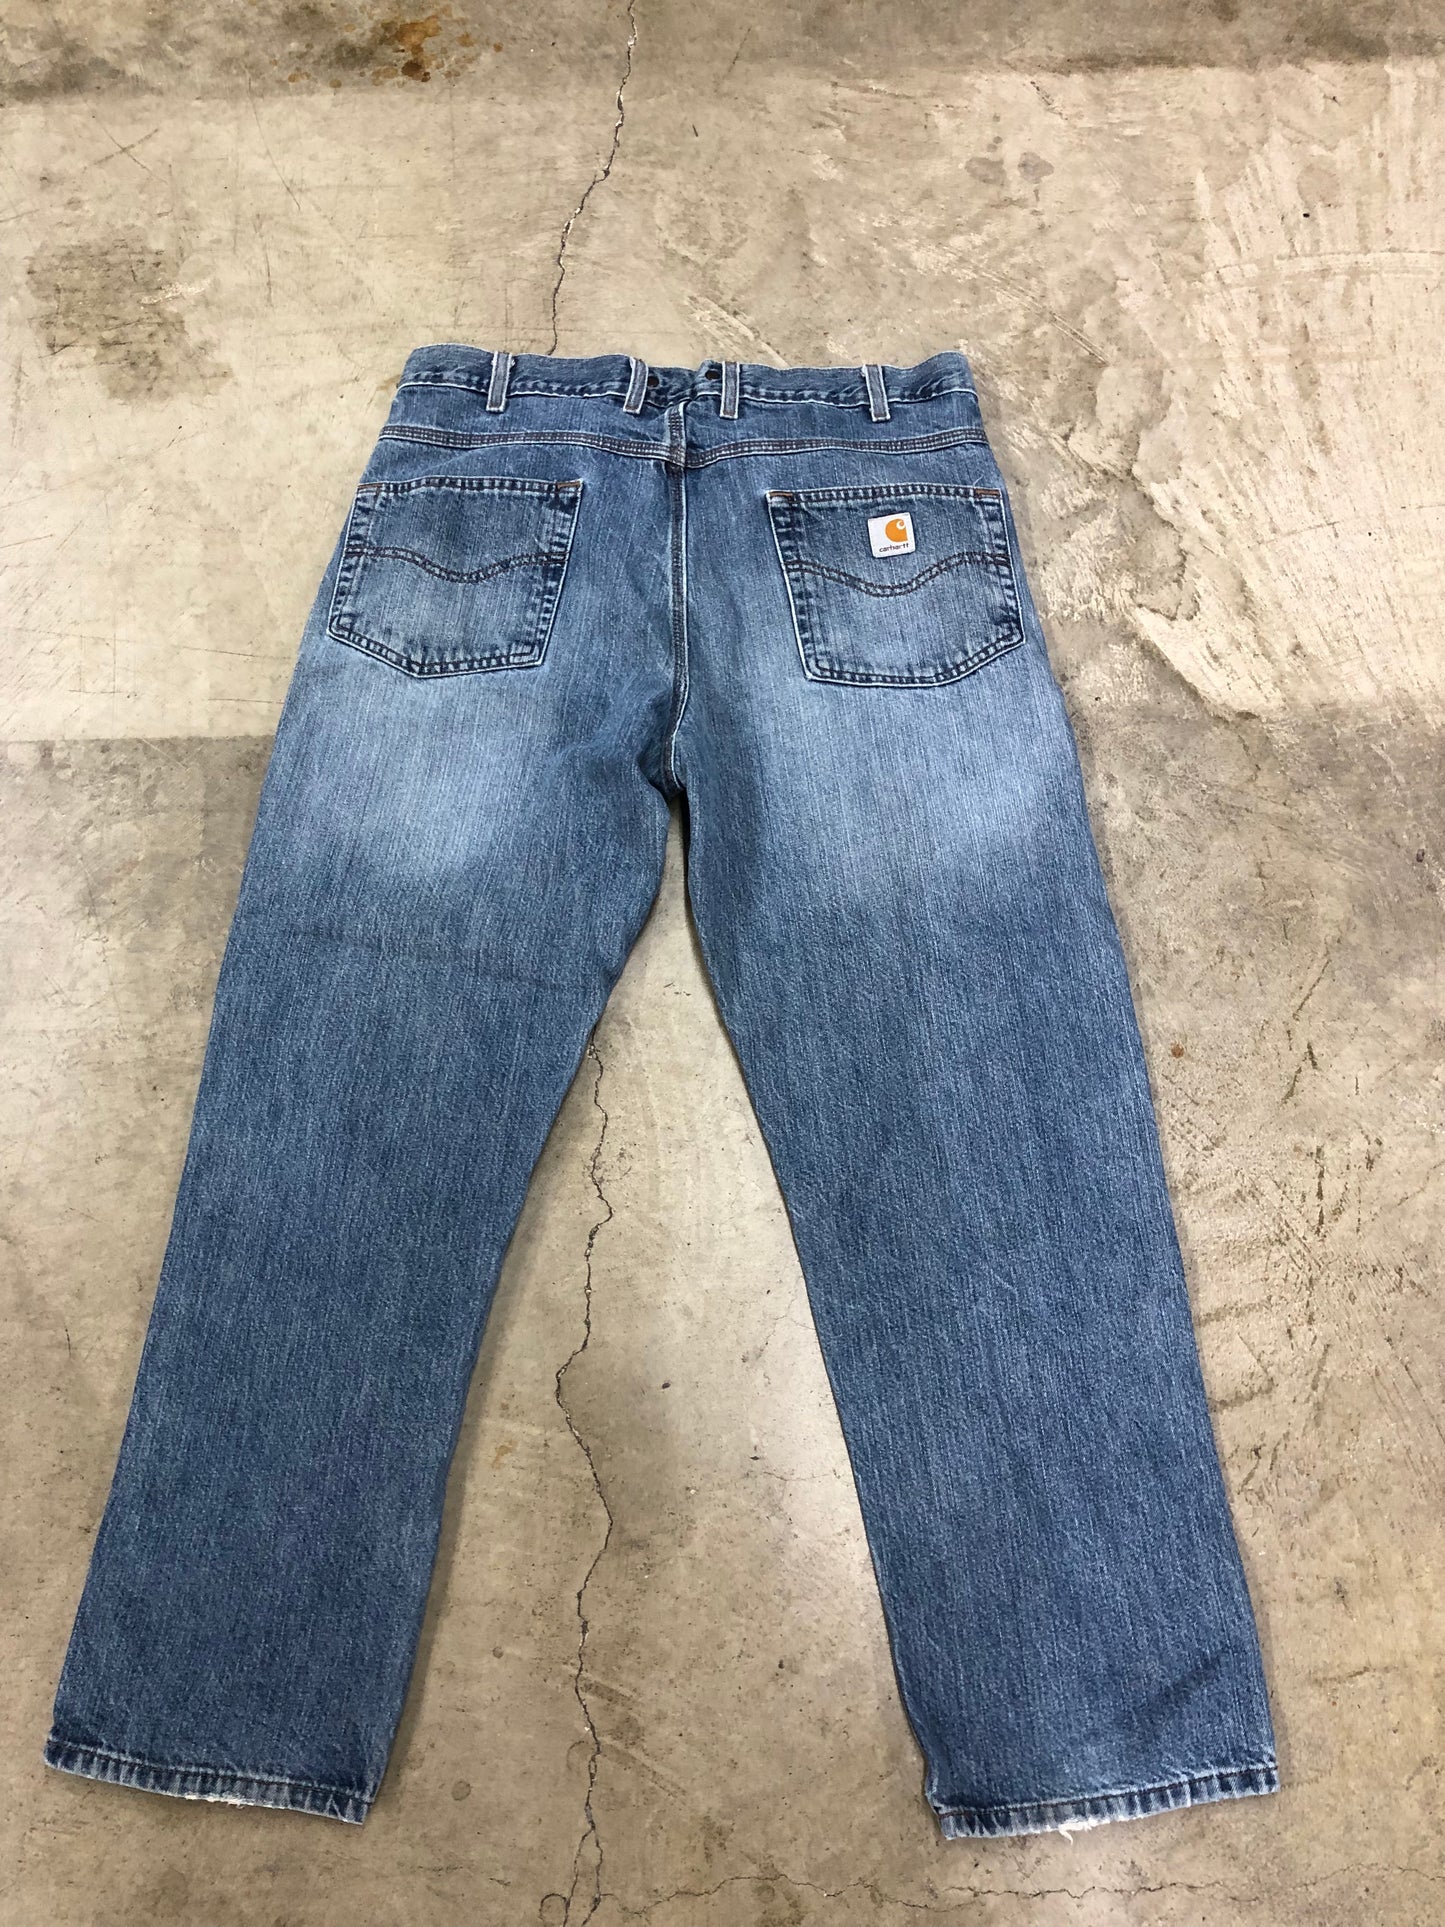 Carhartt Workwear Denim Jeans Sz 38x30